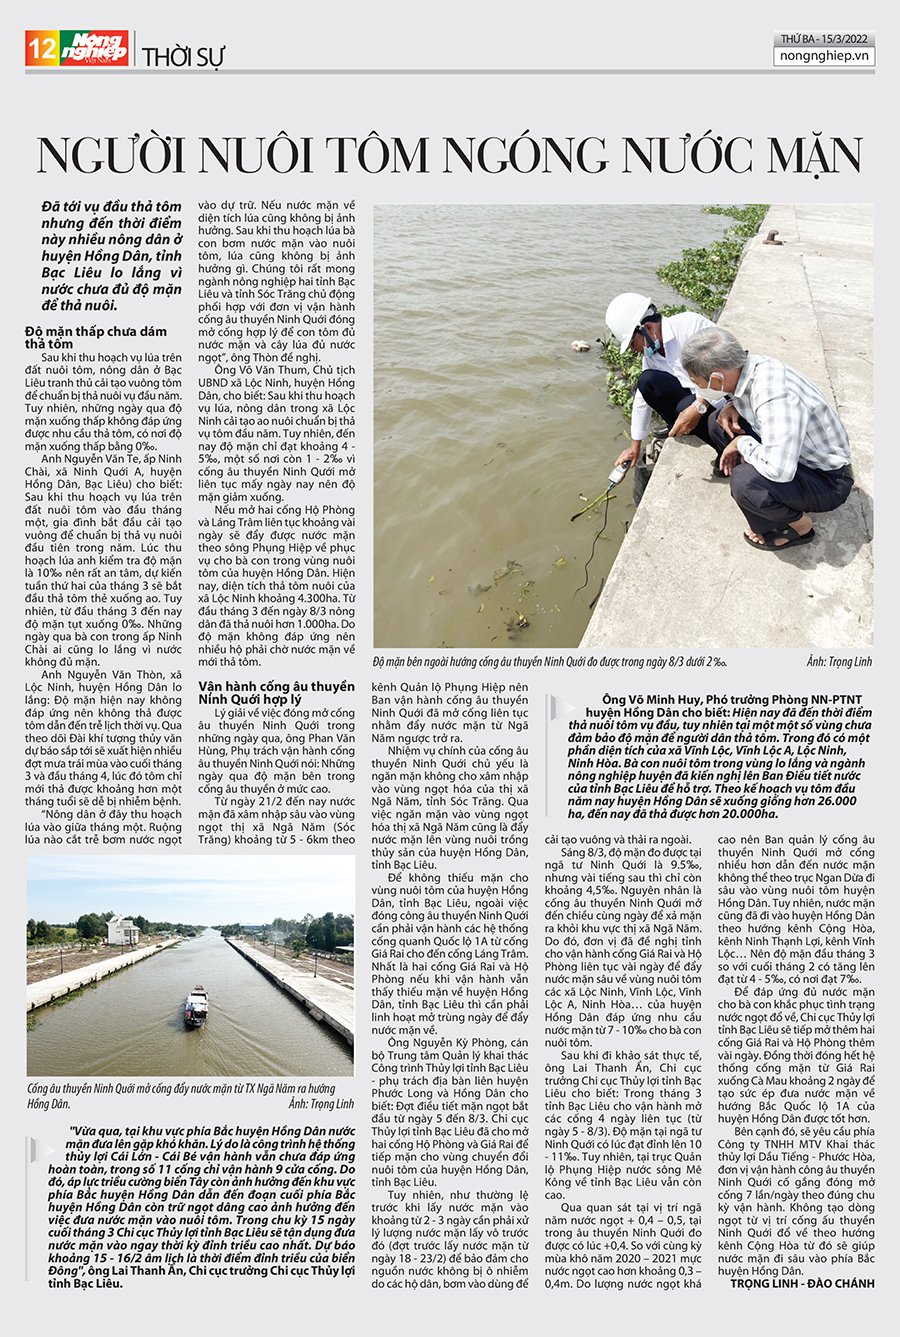 Trang 12 báo Nông nghiệp Việt Nam số 52 ra ngày 15/3/2022